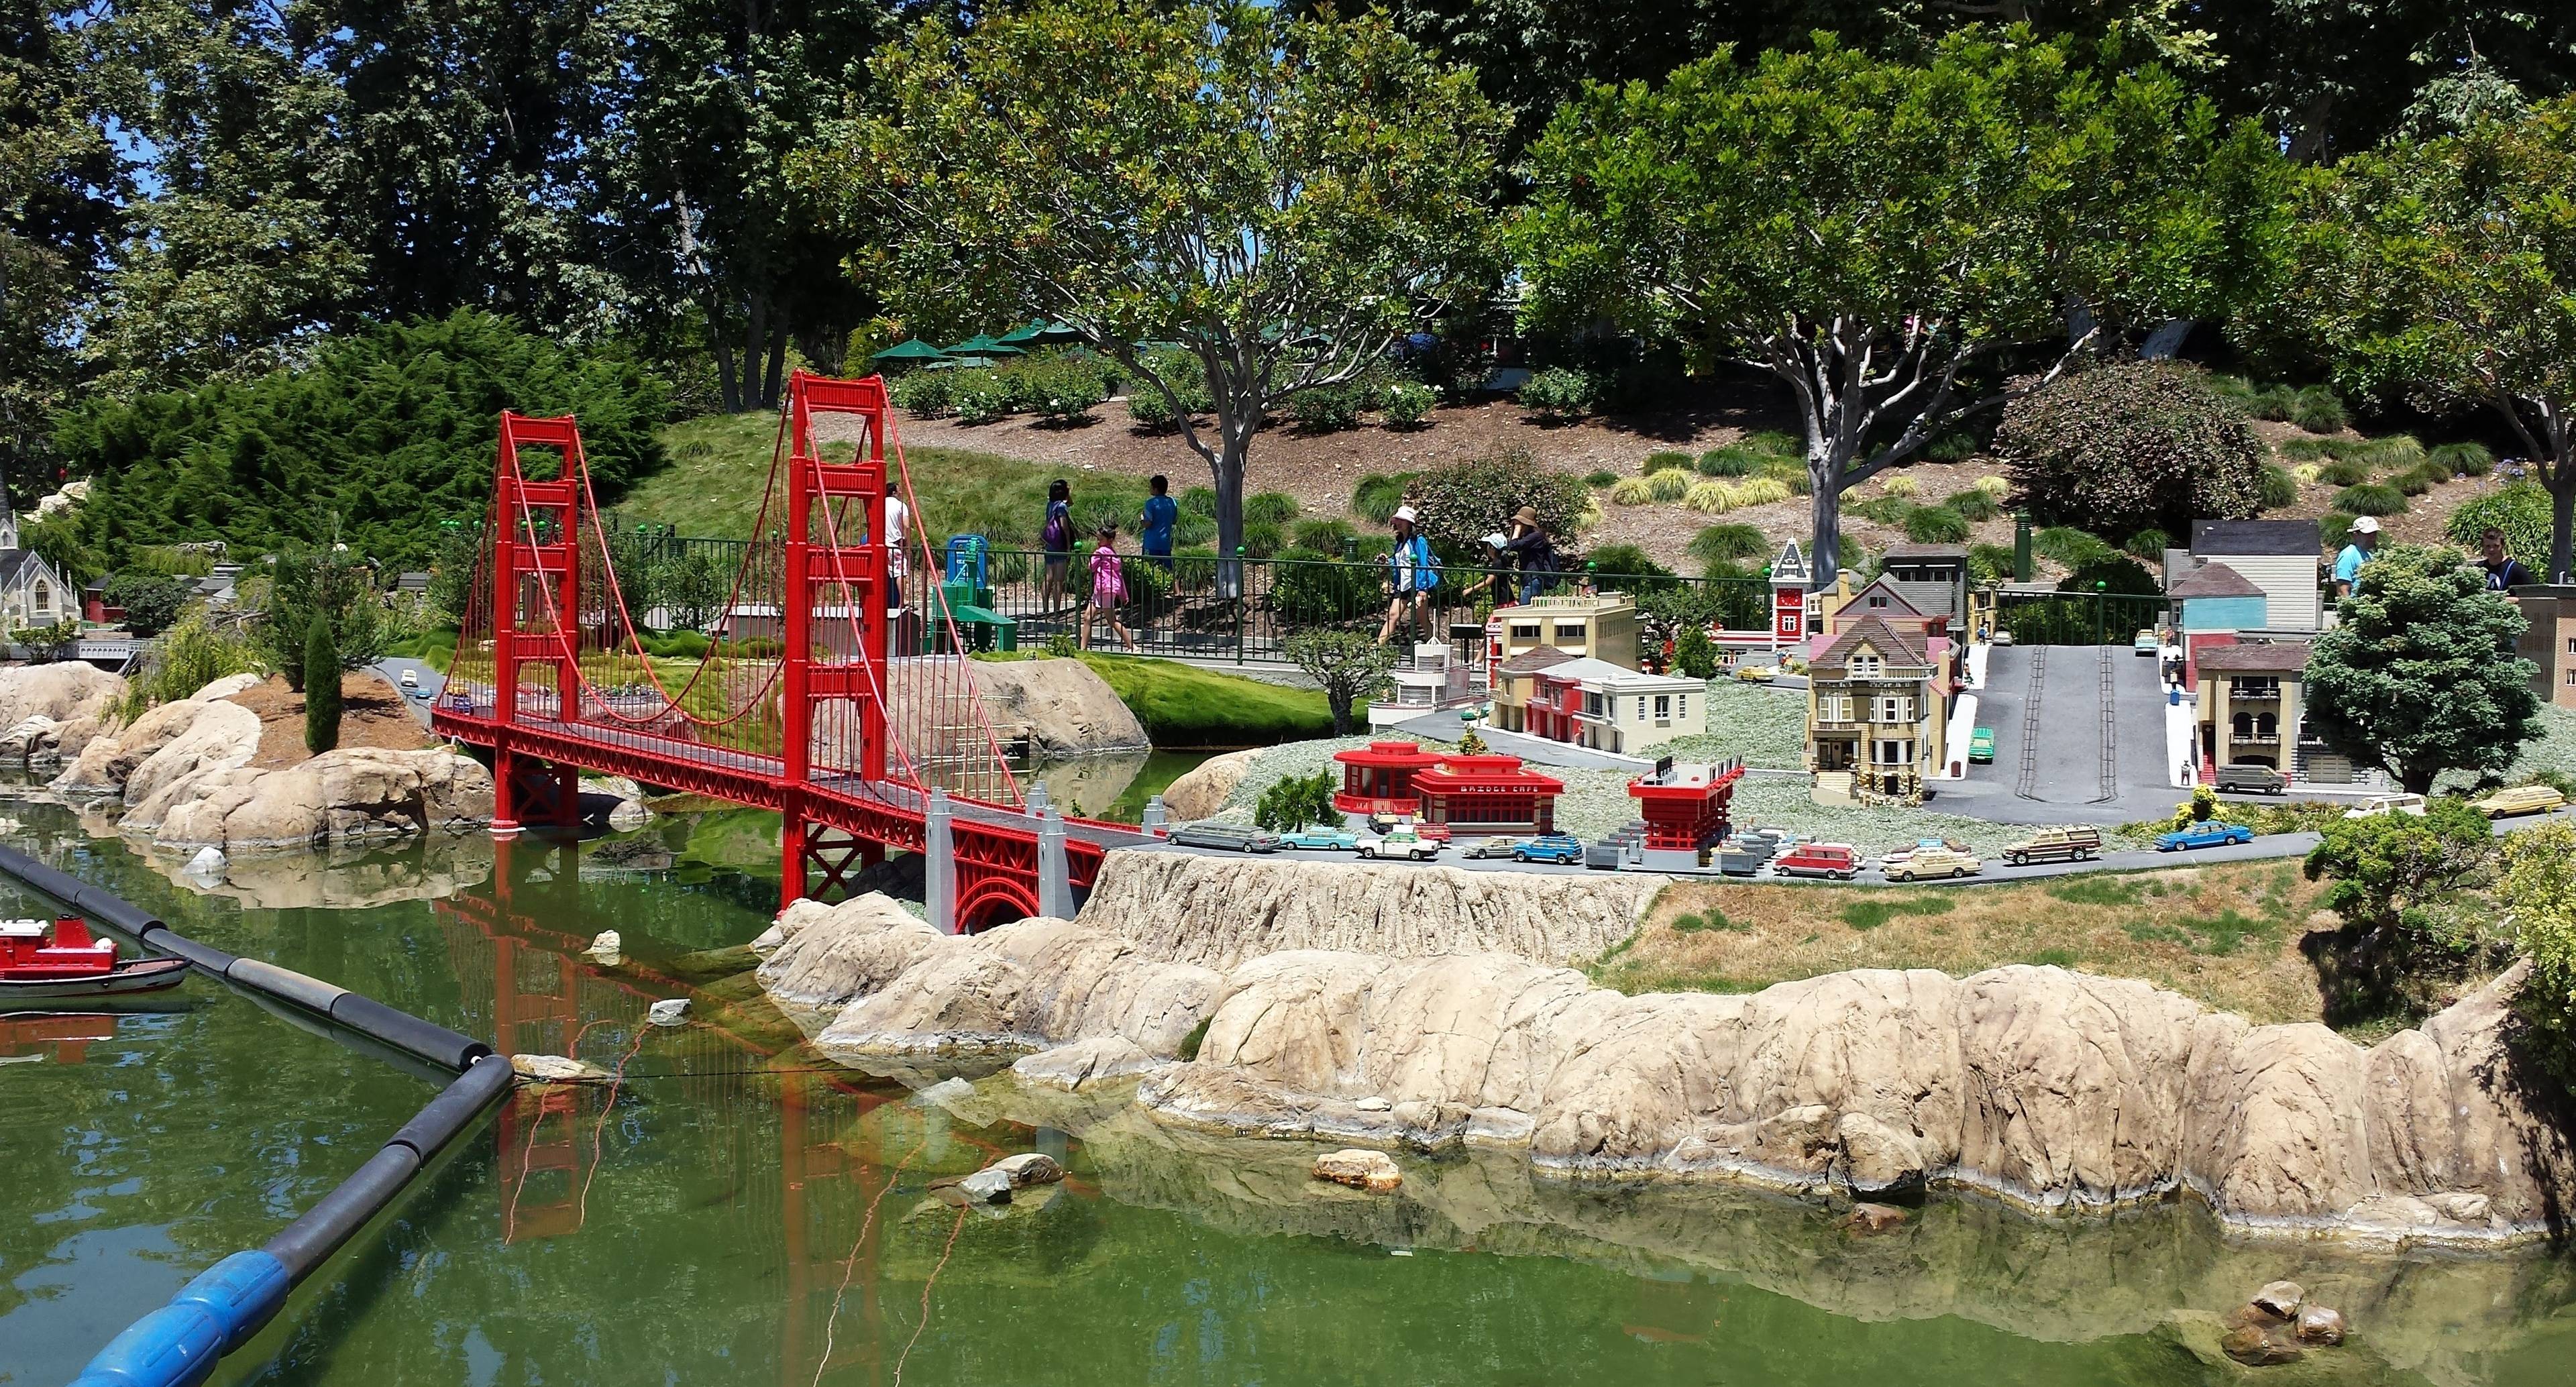 Reise nach San Diego über Legoland